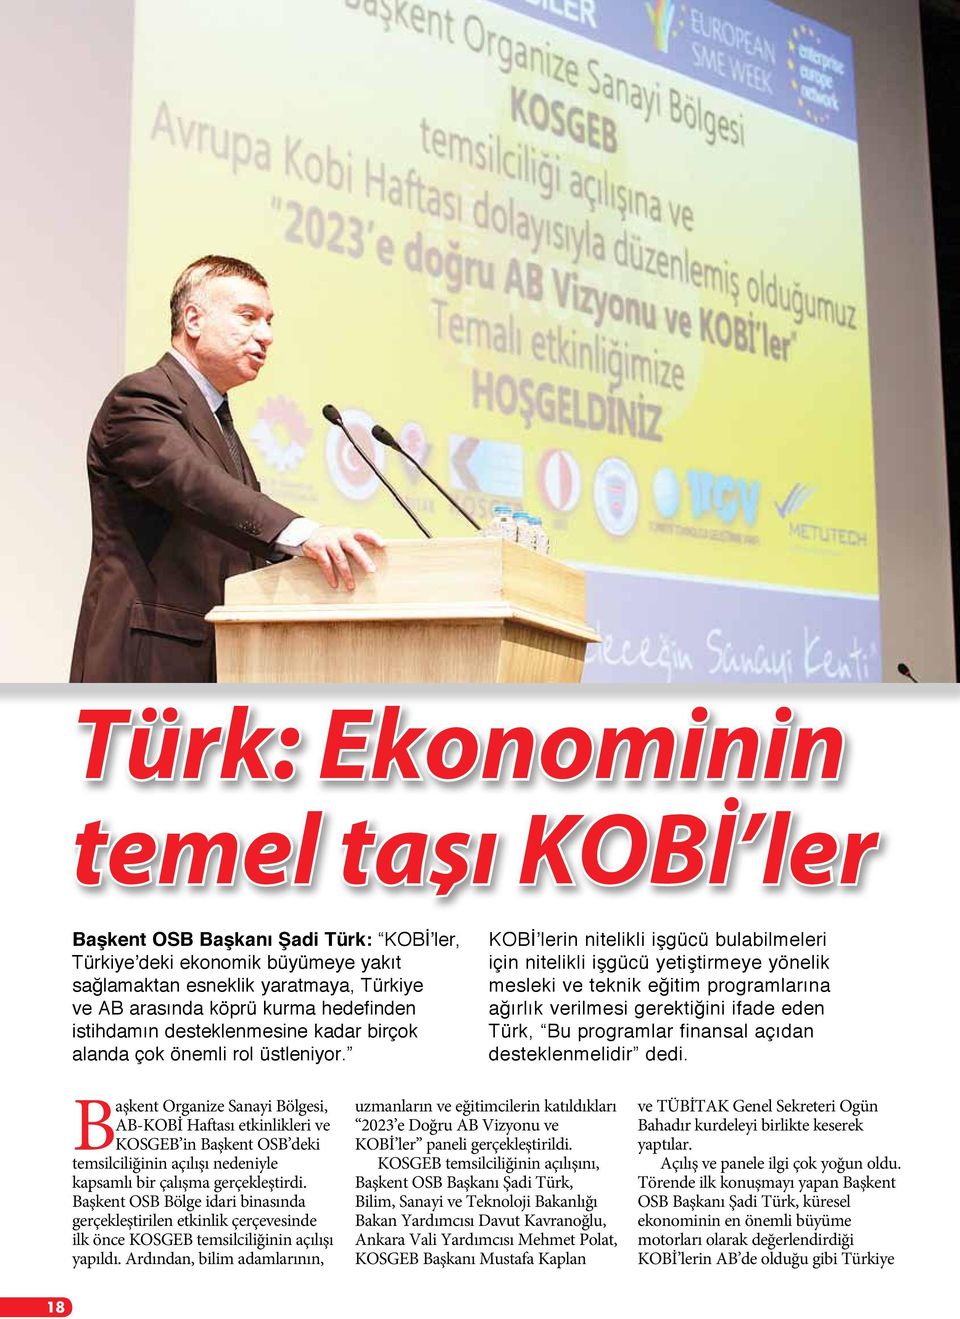 KOBİ lerin nitelikli işgücü bulabilmeleri için nitelikli işgücü yetiştirmeye yönelik mesleki ve teknik eğitim programlarına ağırlık verilmesi gerektiğini ifade eden Türk, Bu programlar finansal